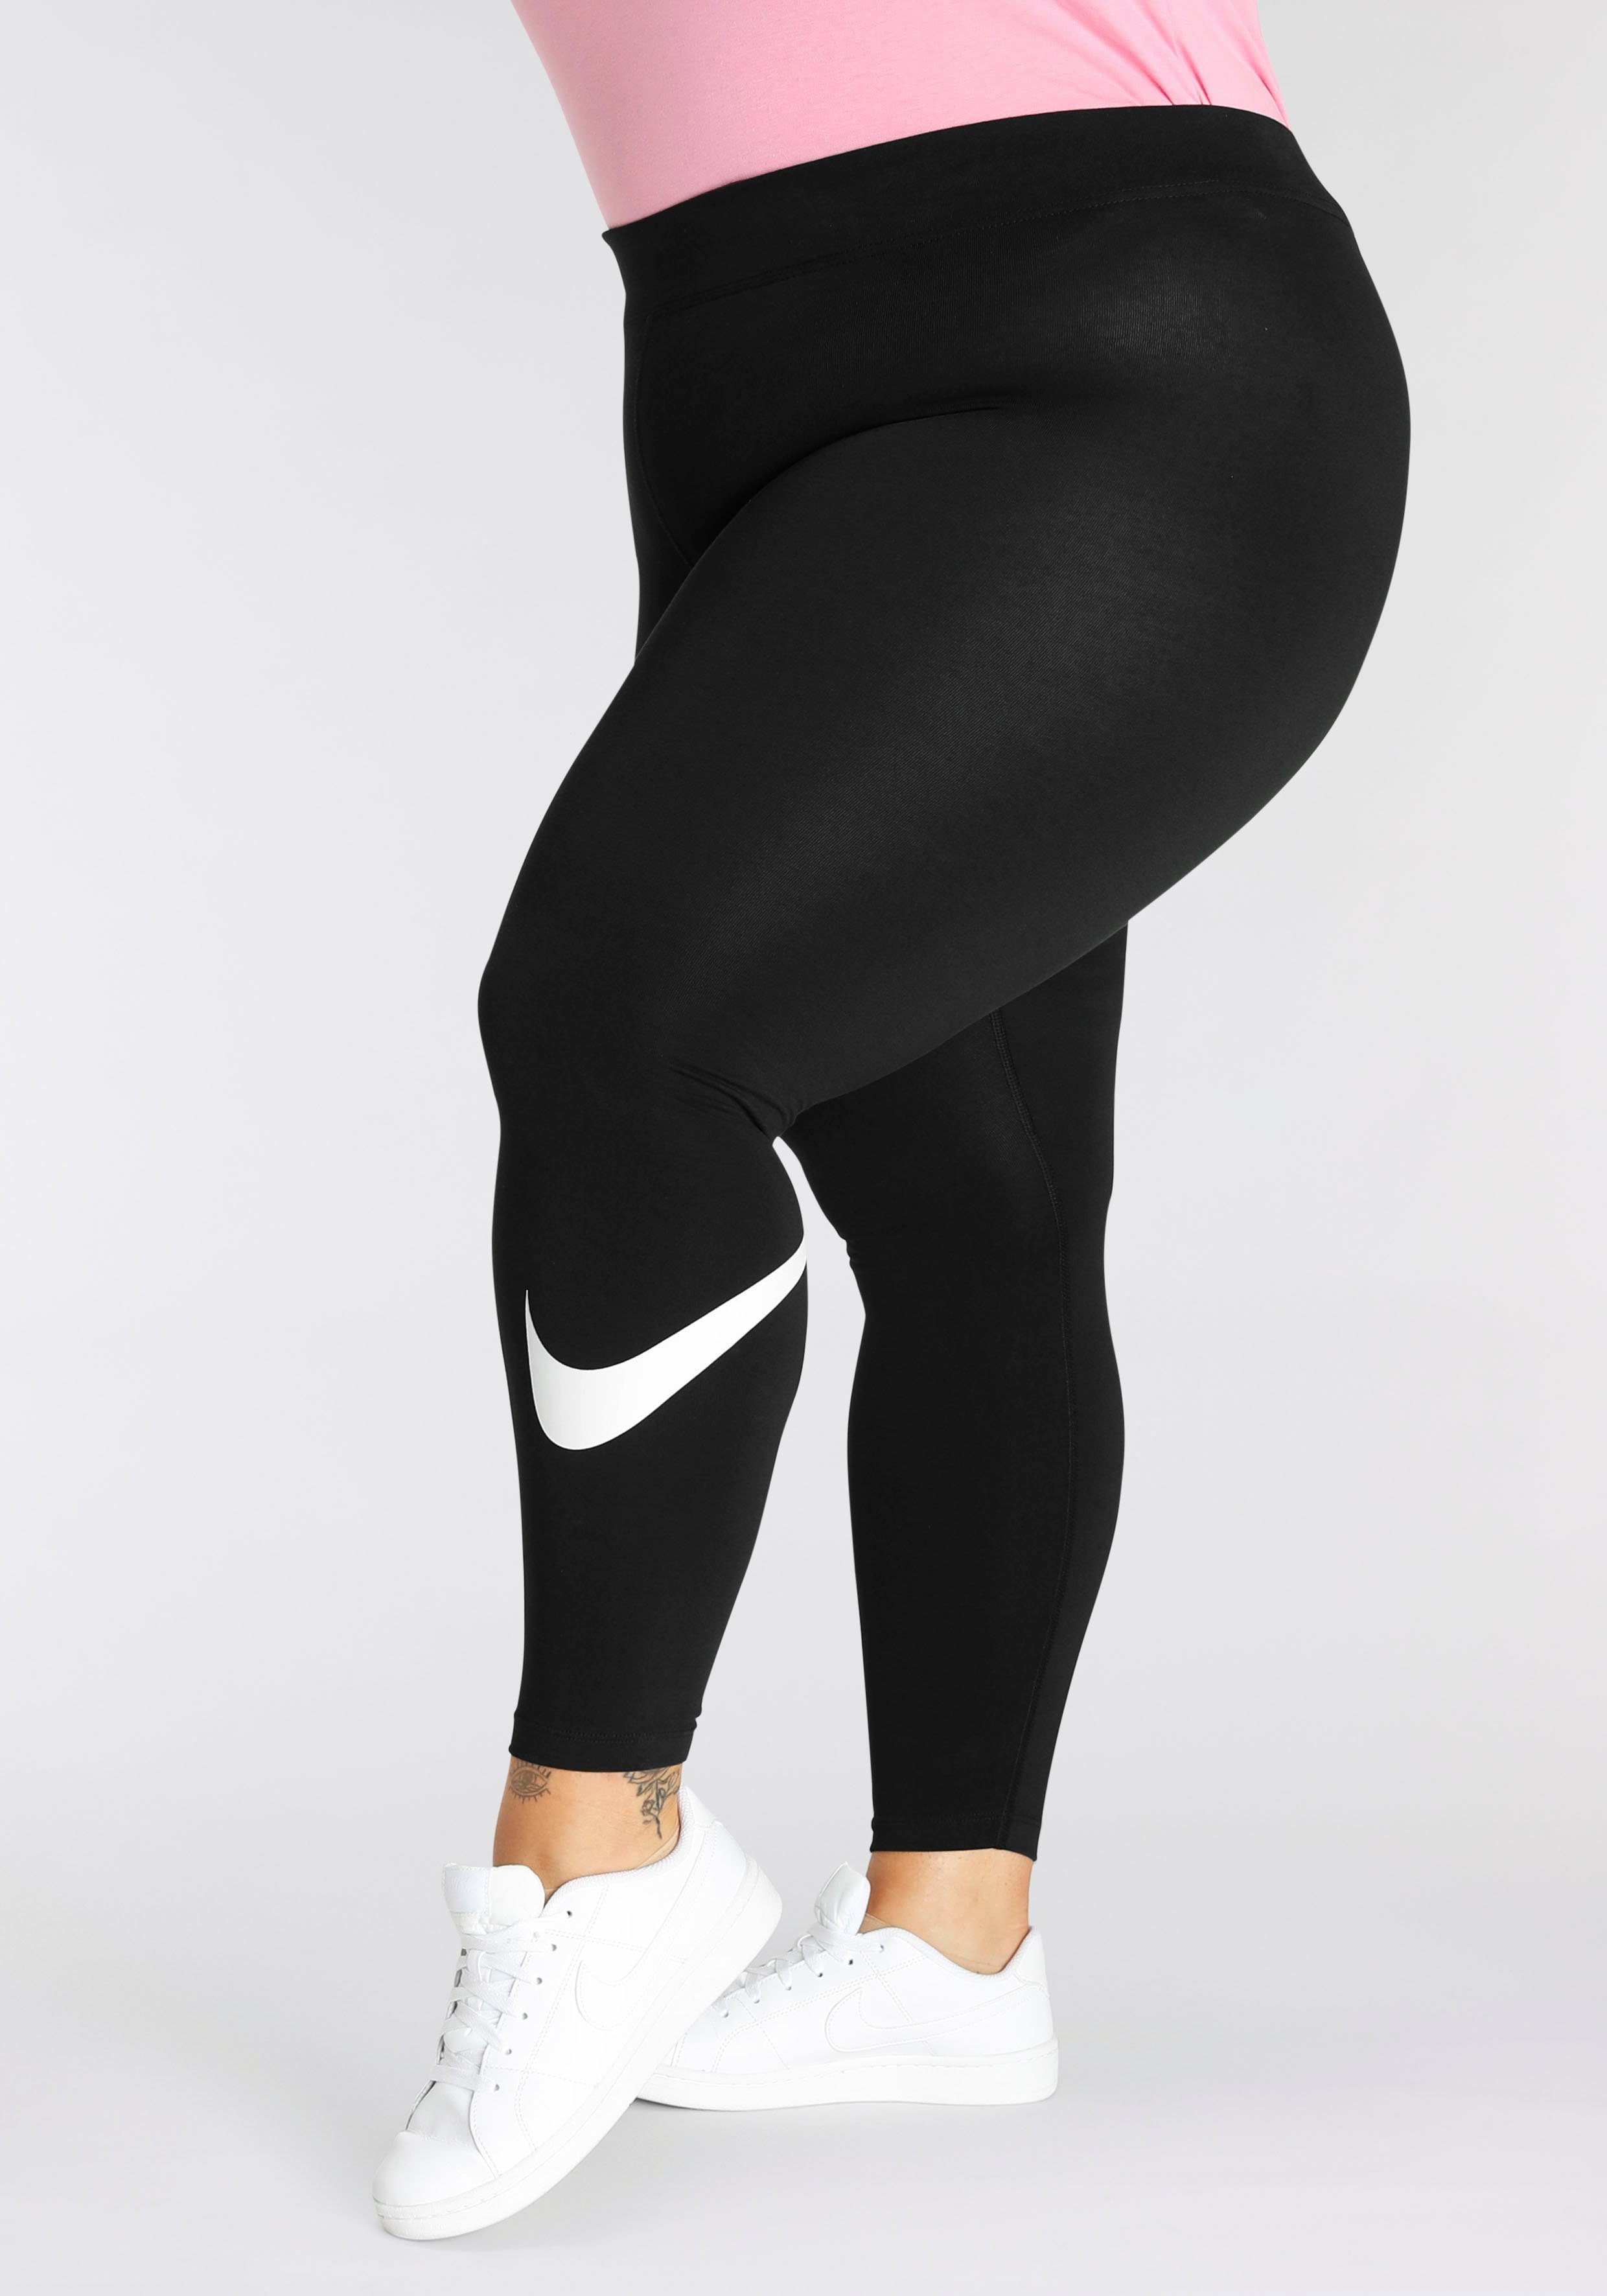 Mid-Rise Leggings Leggings Size) Nike Sportswear Swoosh (Plus Essential Women's